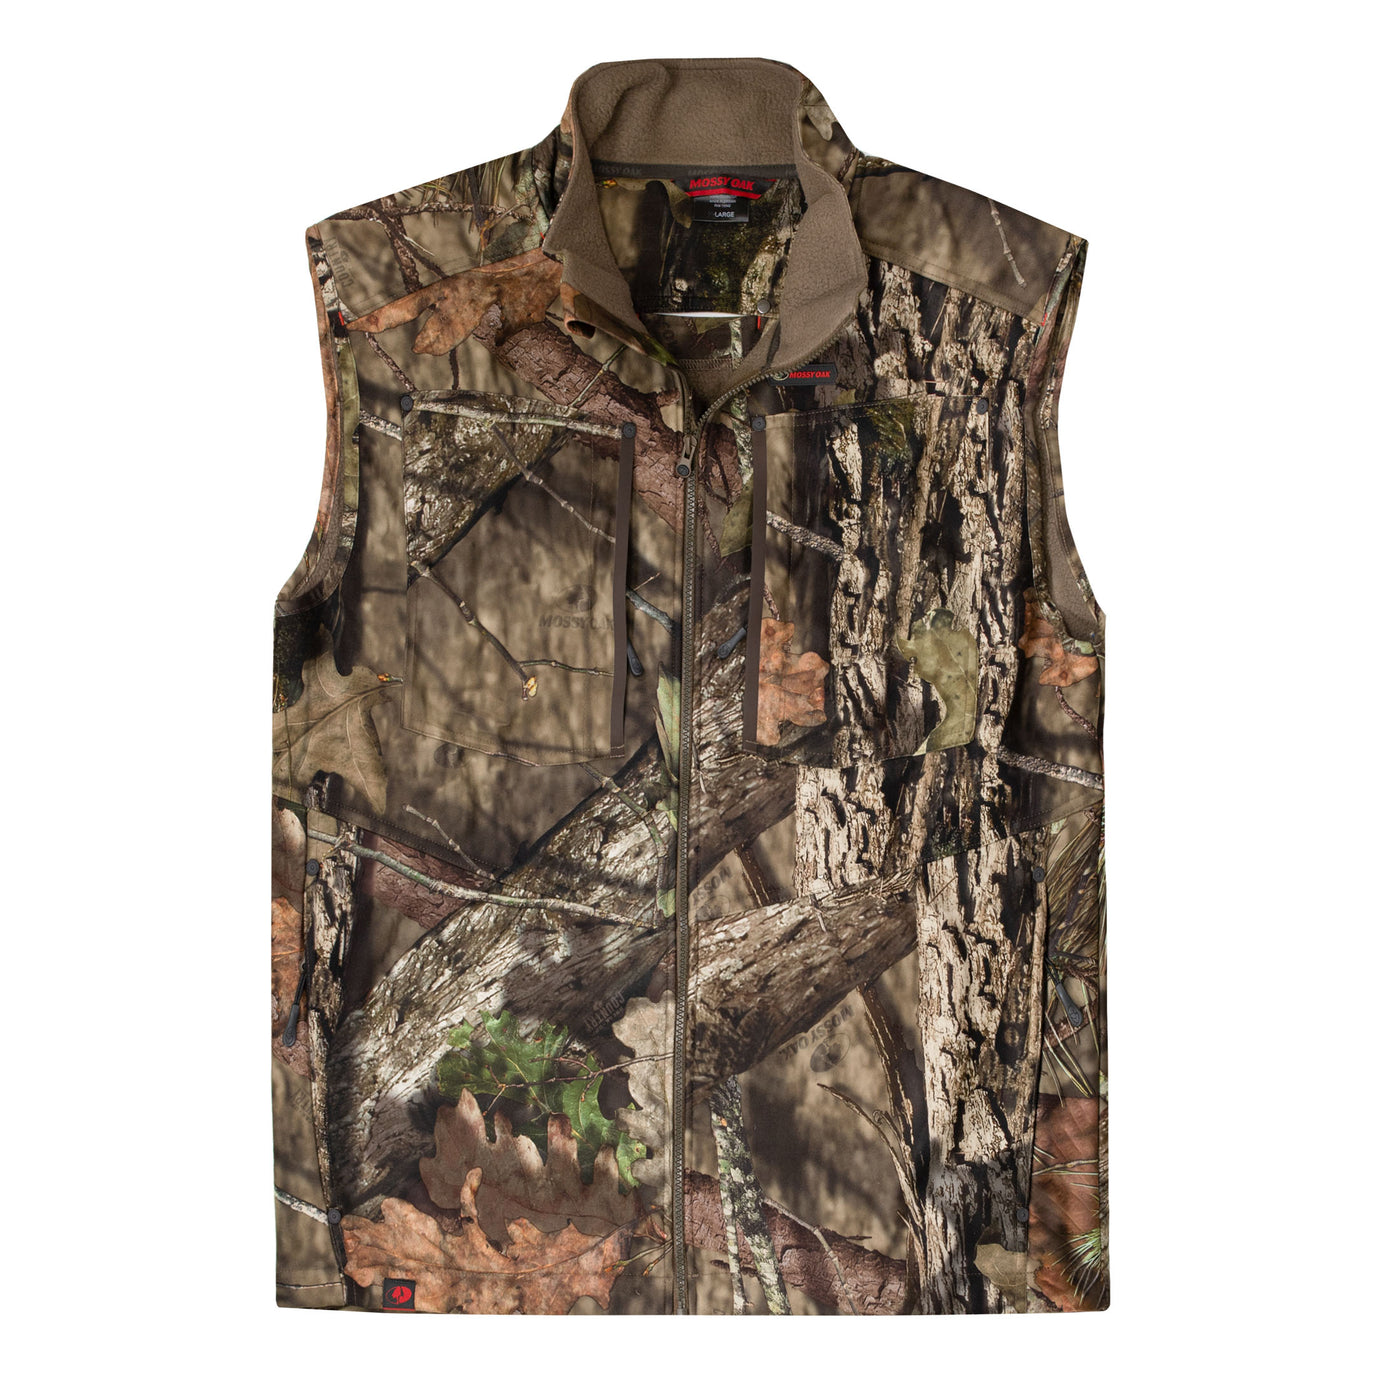 Sherpa 2.0 Lined Vest – The Mossy Oak Store